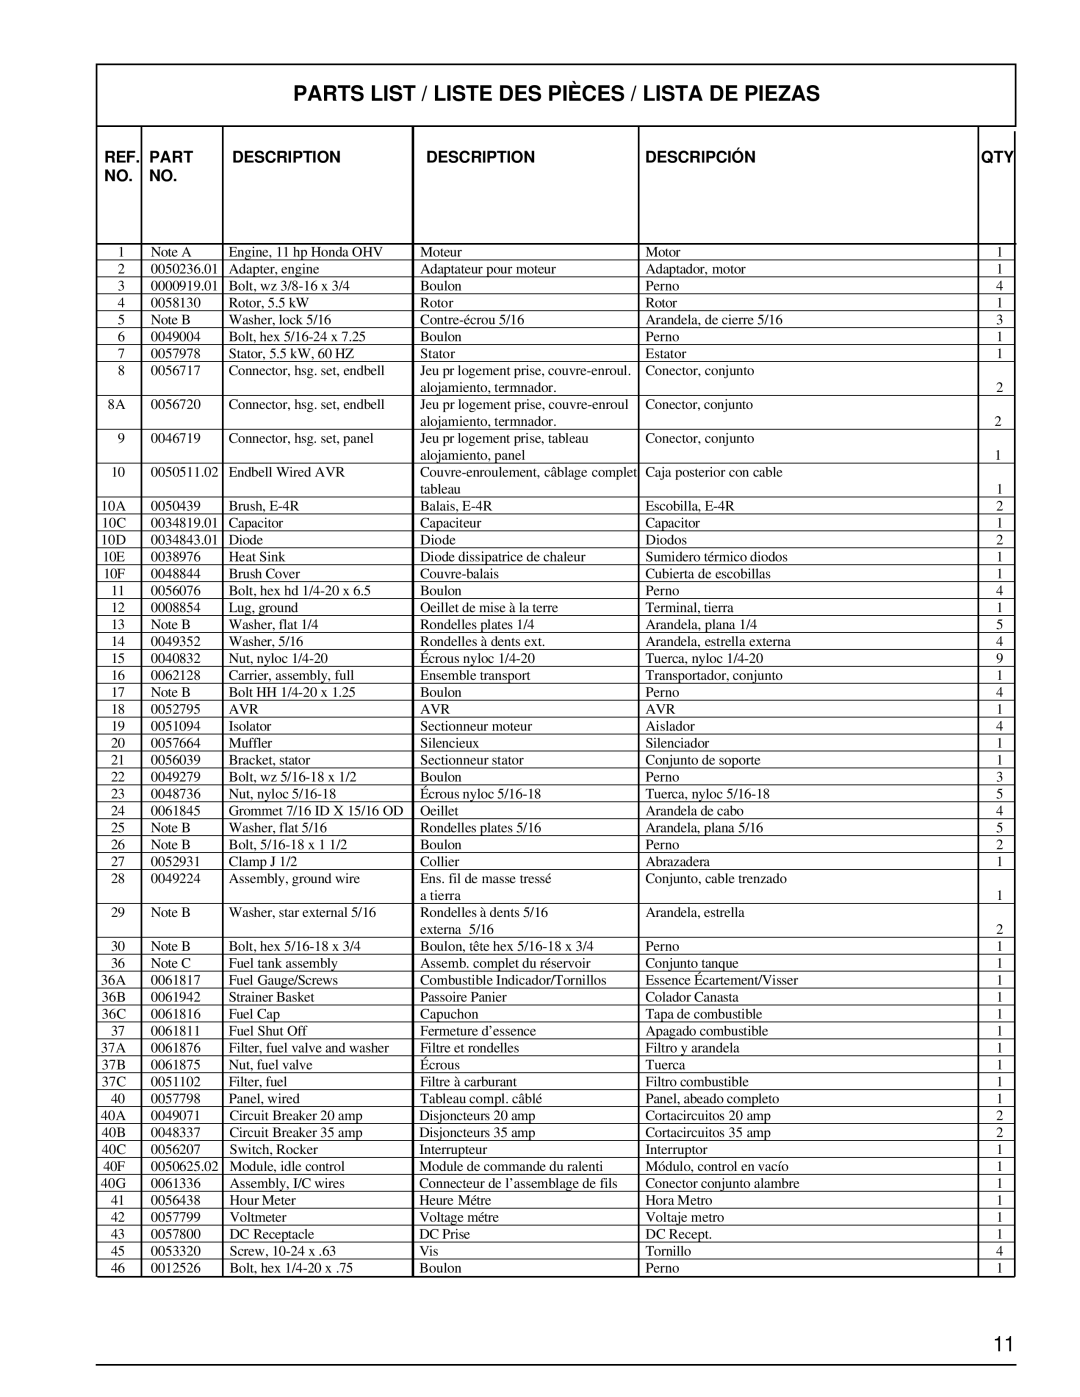 Powermate PM0495501.01 manual Parts List / Liste Des Pièces / Lista De Piezas, Description, Descripción 